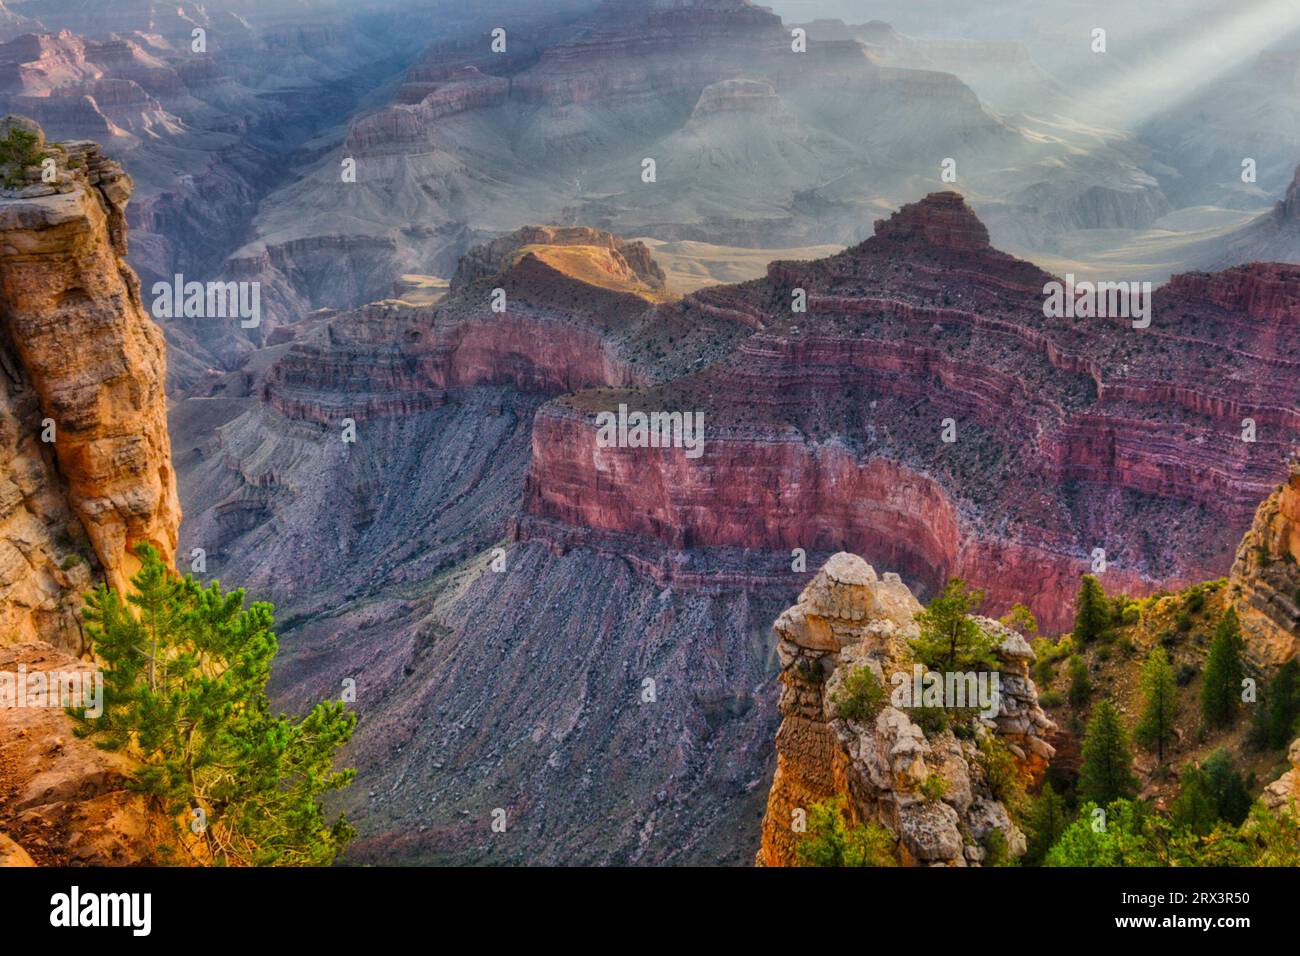 Amanecer en el Borde Sur del Parque Nacional Gran Cañón en Arizona. Grand Canyon es una maravilla geológica. Foto de stock